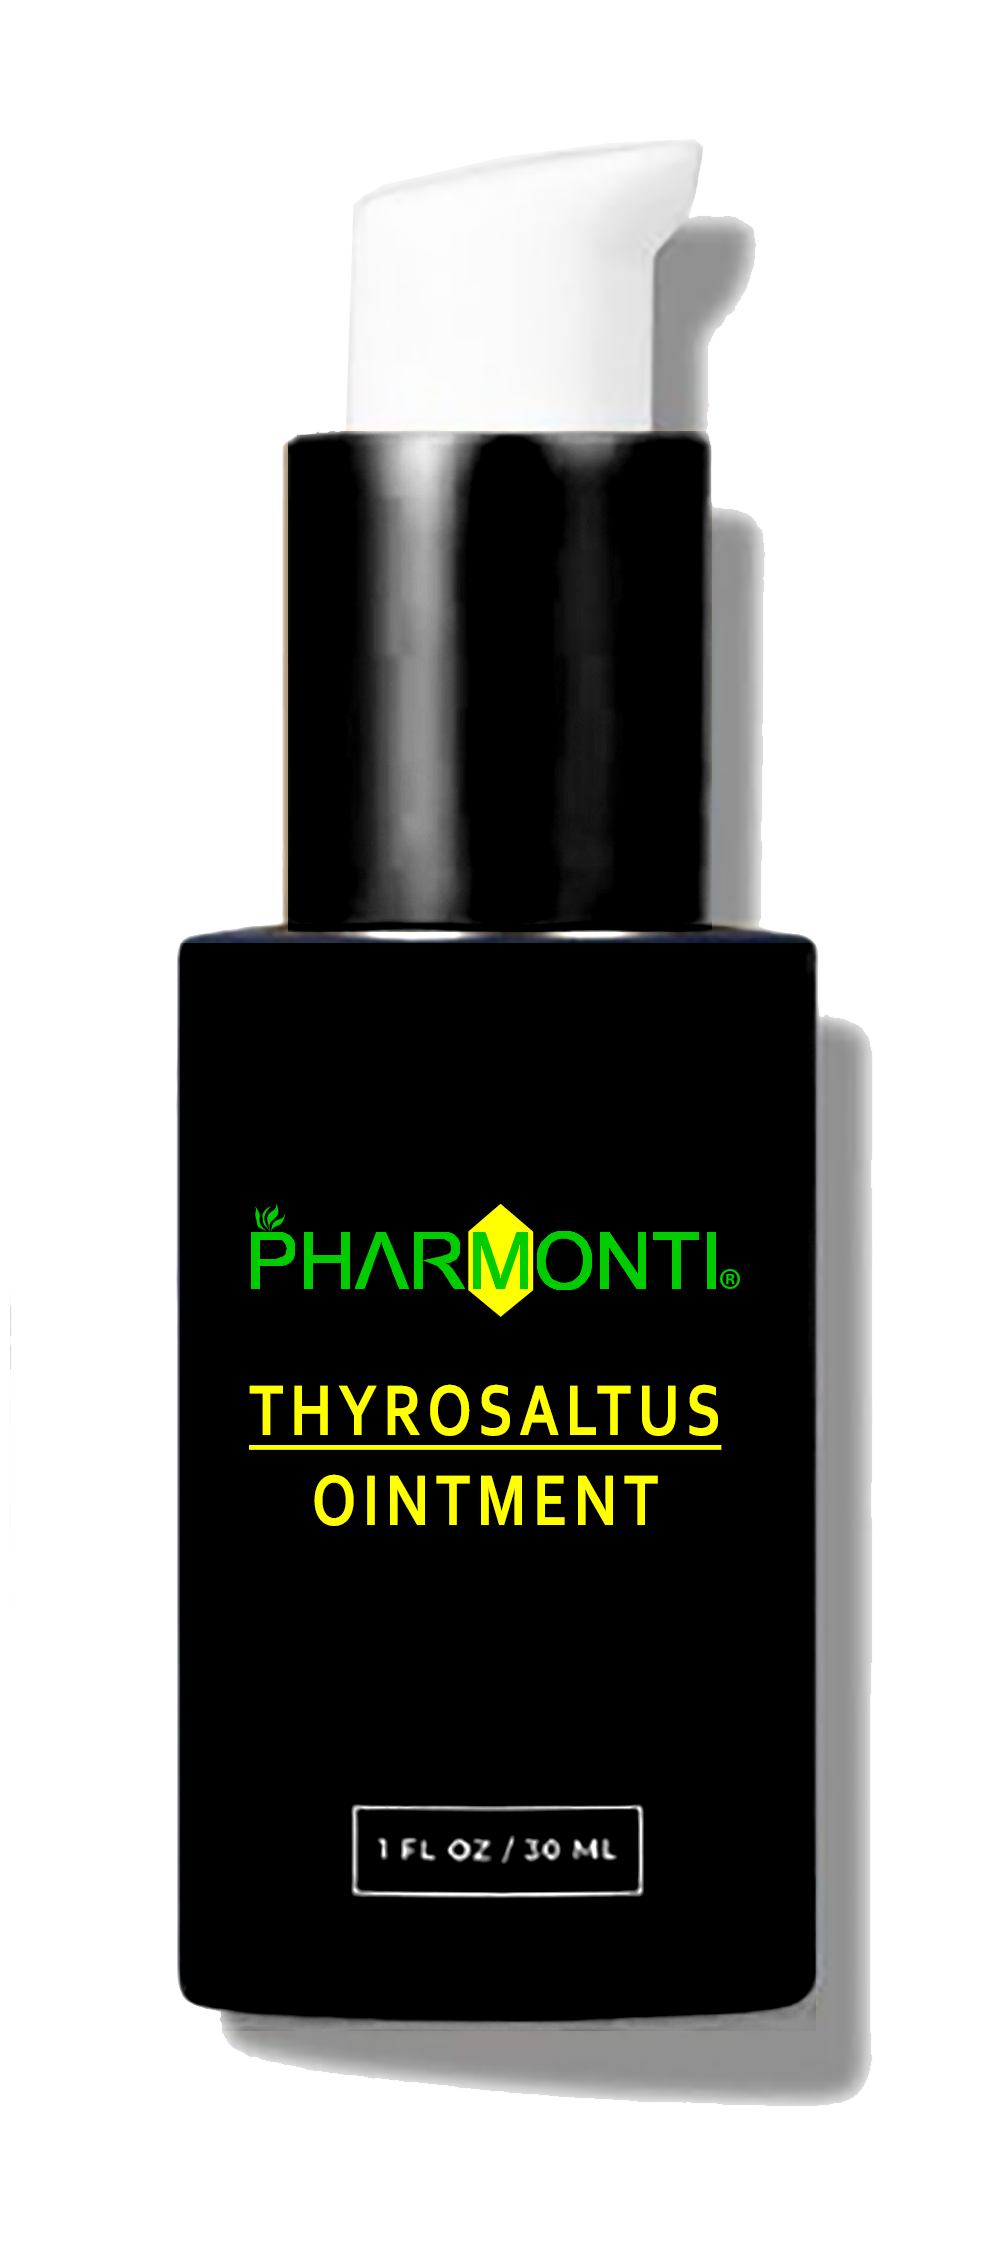 پماد ضد سرفه، سینوزیت، عفونت و آنتی باکتریال گیاهی تیروسالتوس Thyrosaltus